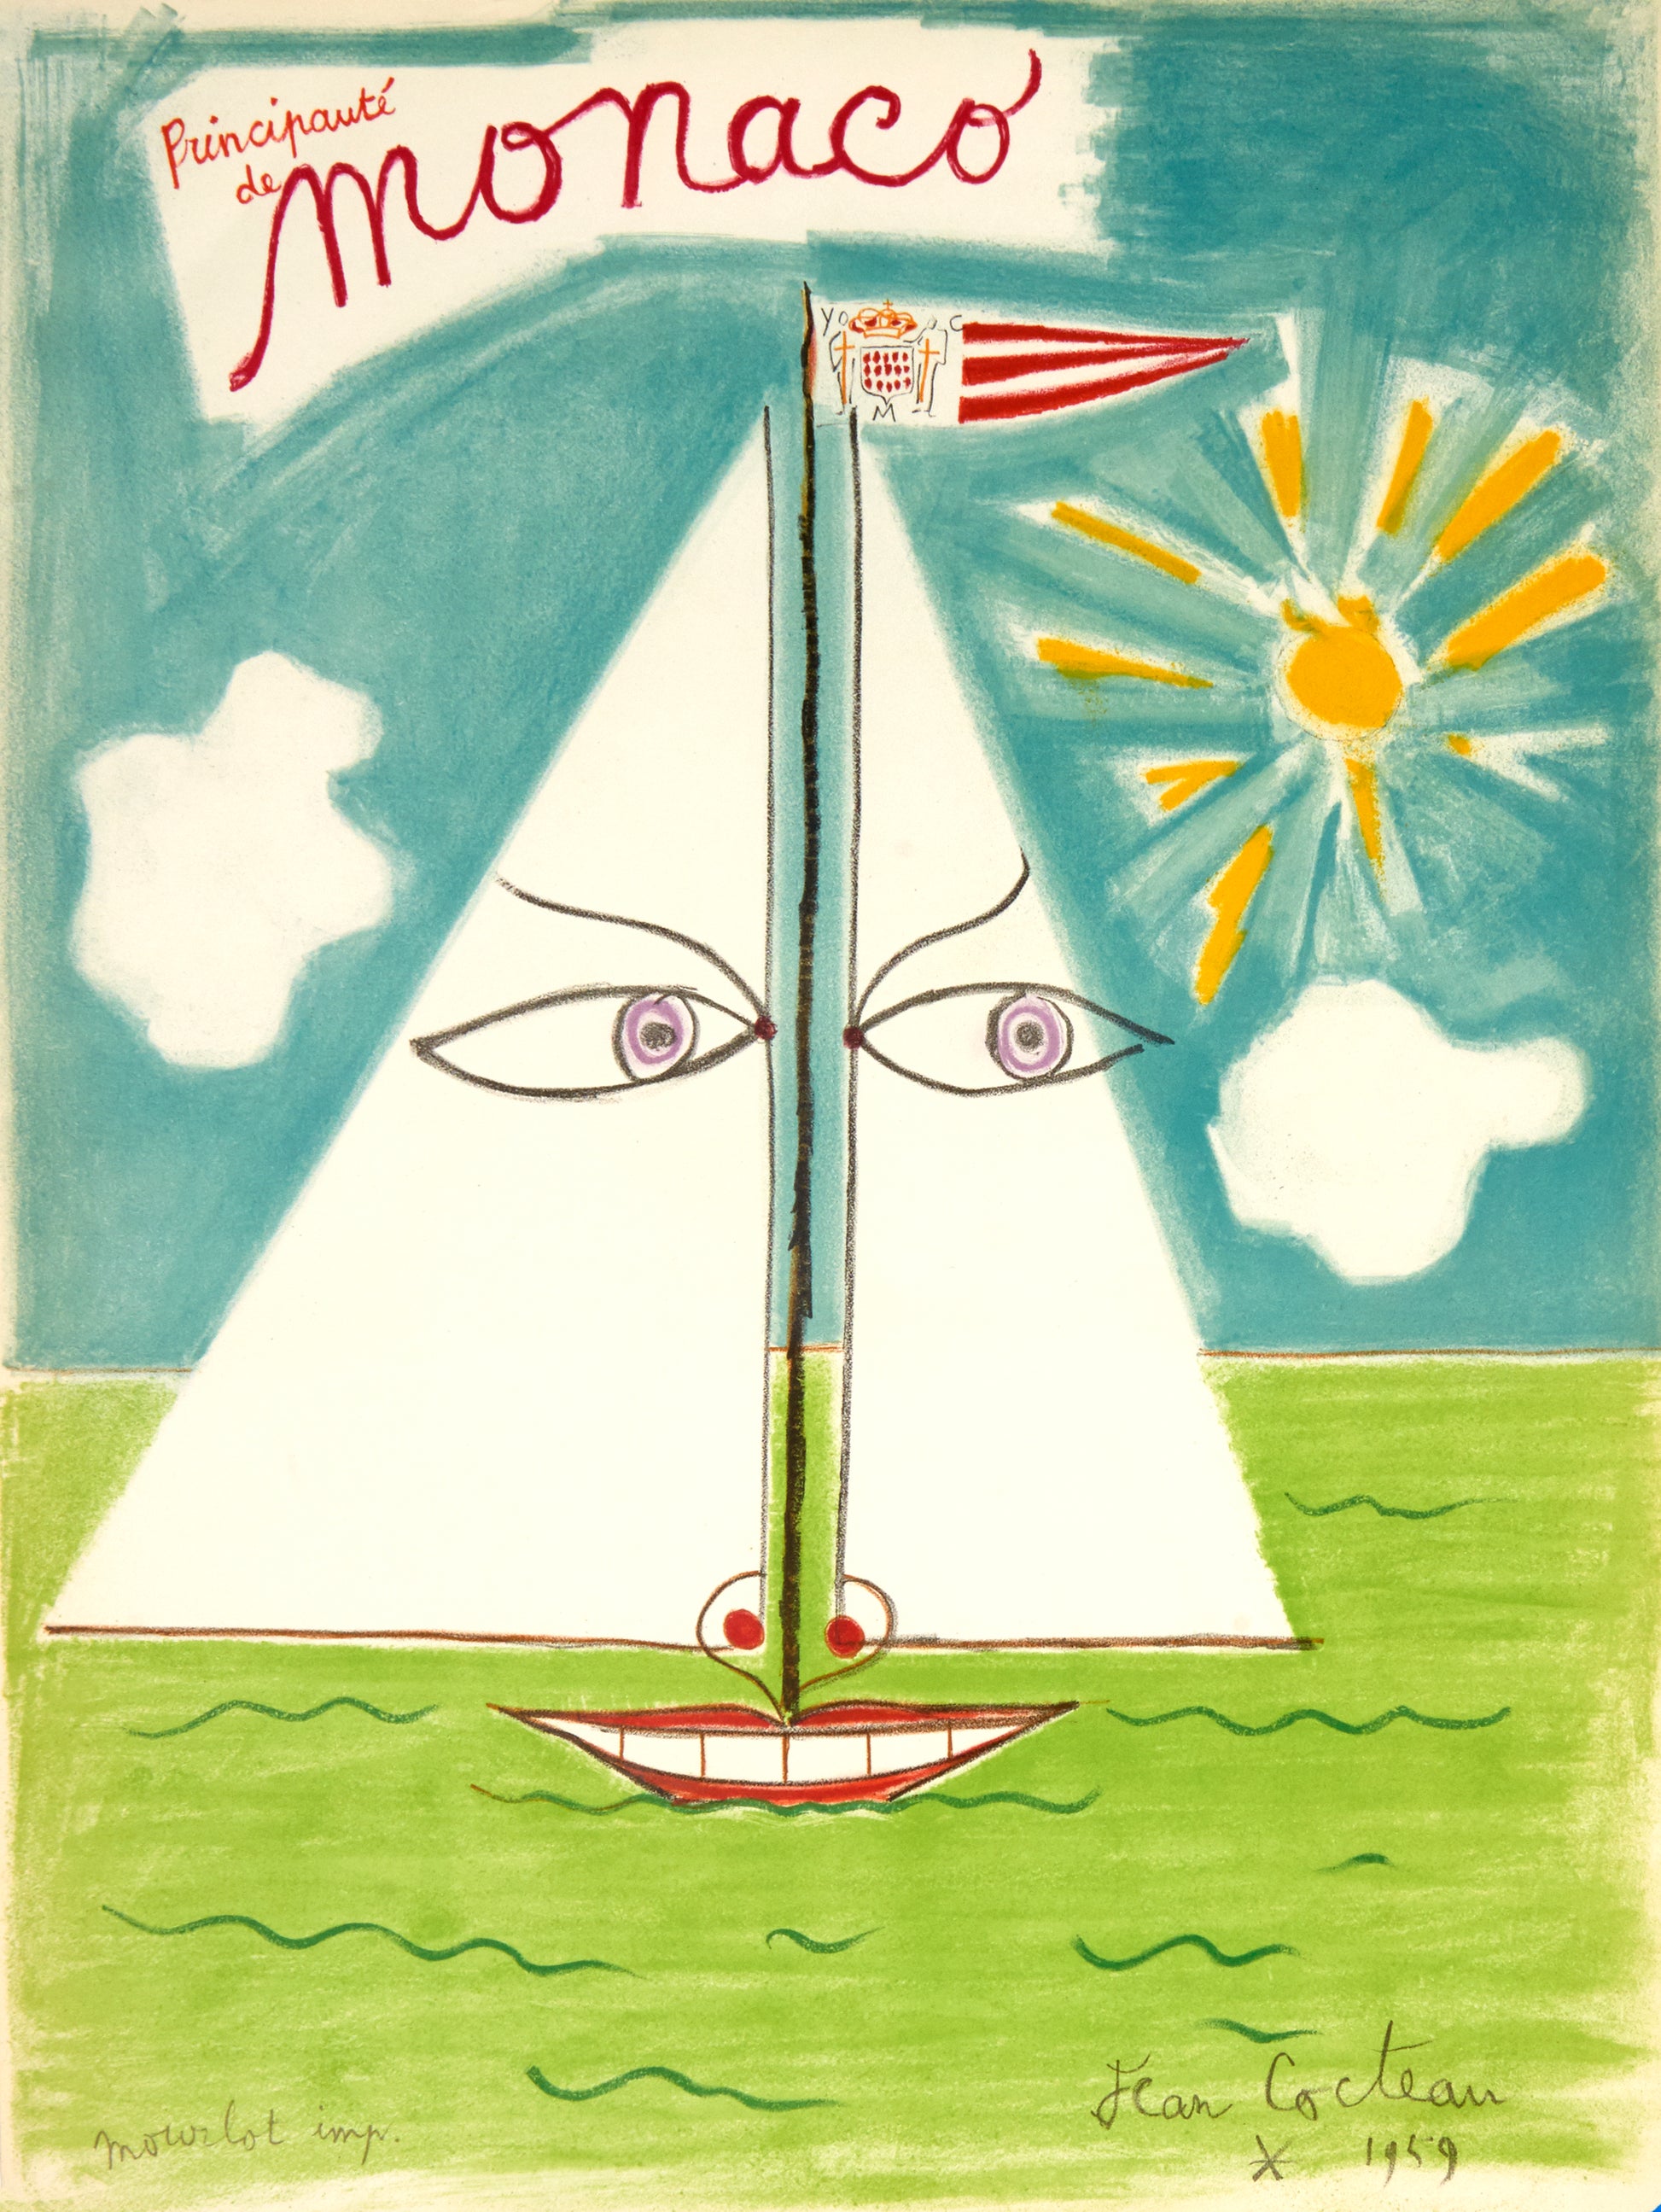 Monaco by Jean Cocteau, 1959 - Mourlot Editions - Fine_Art - Poster - Lithograph - Wall Art - Vintage - Prints - Original